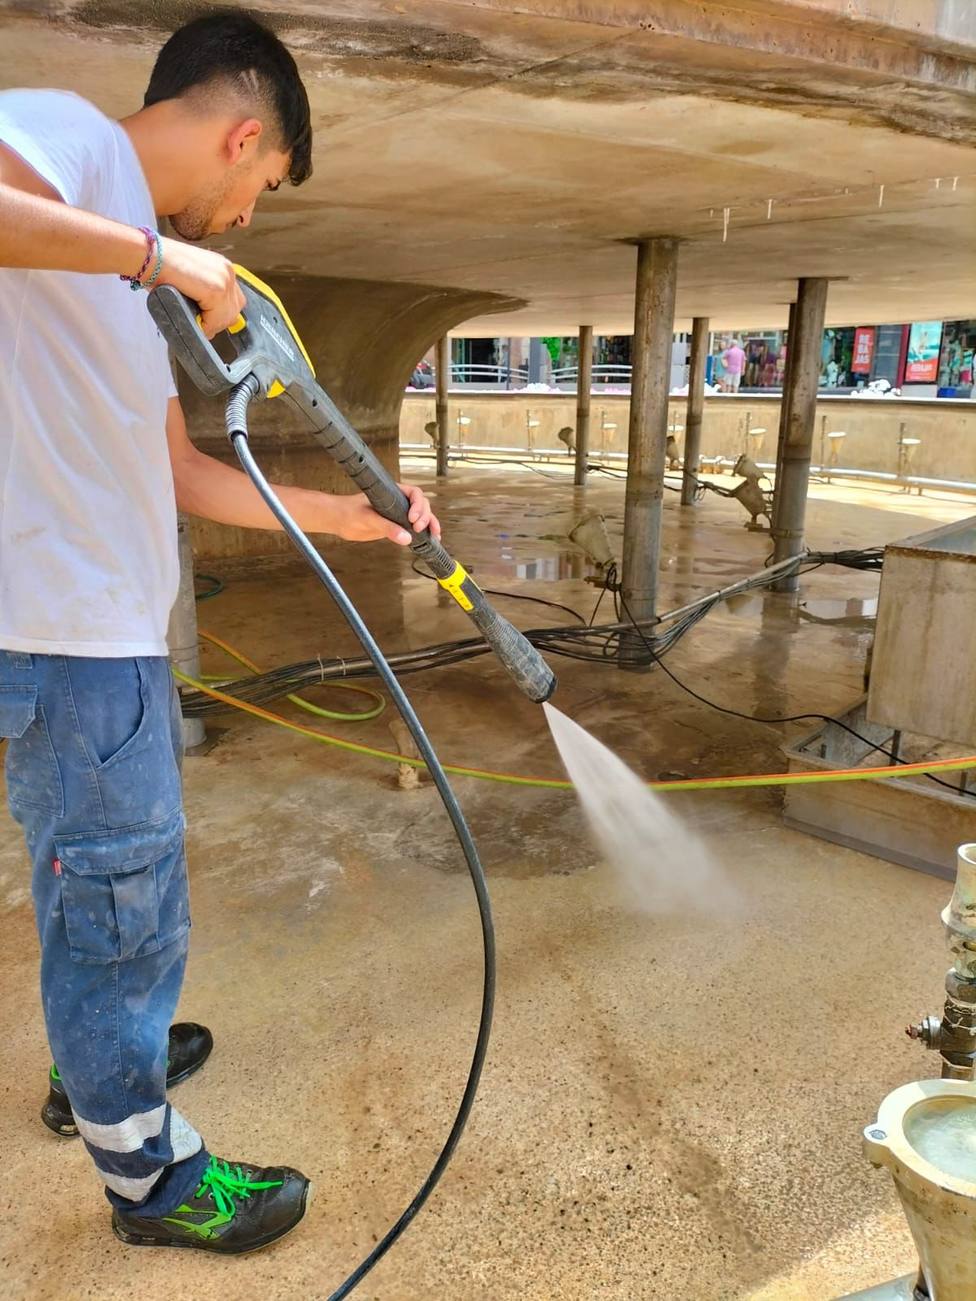 Lorca finaliza la revisión periódica de mantenimiento y limpieza de las fuentes municipales